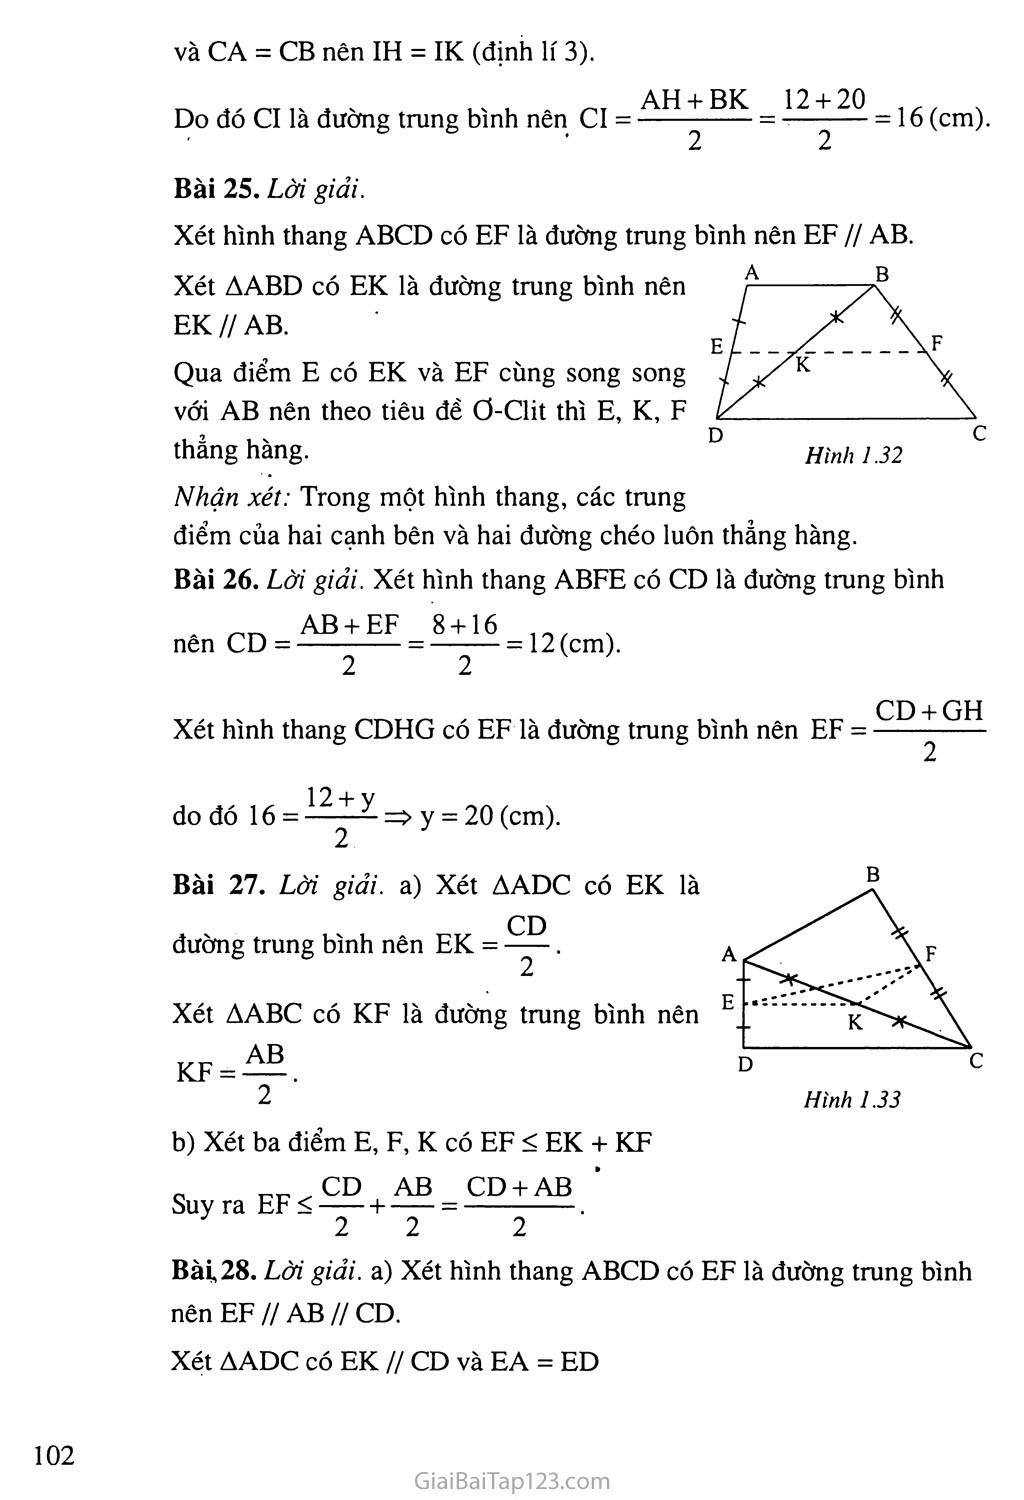 Bài 4. Đường trung bình của tam giác, của hình thang trang 4